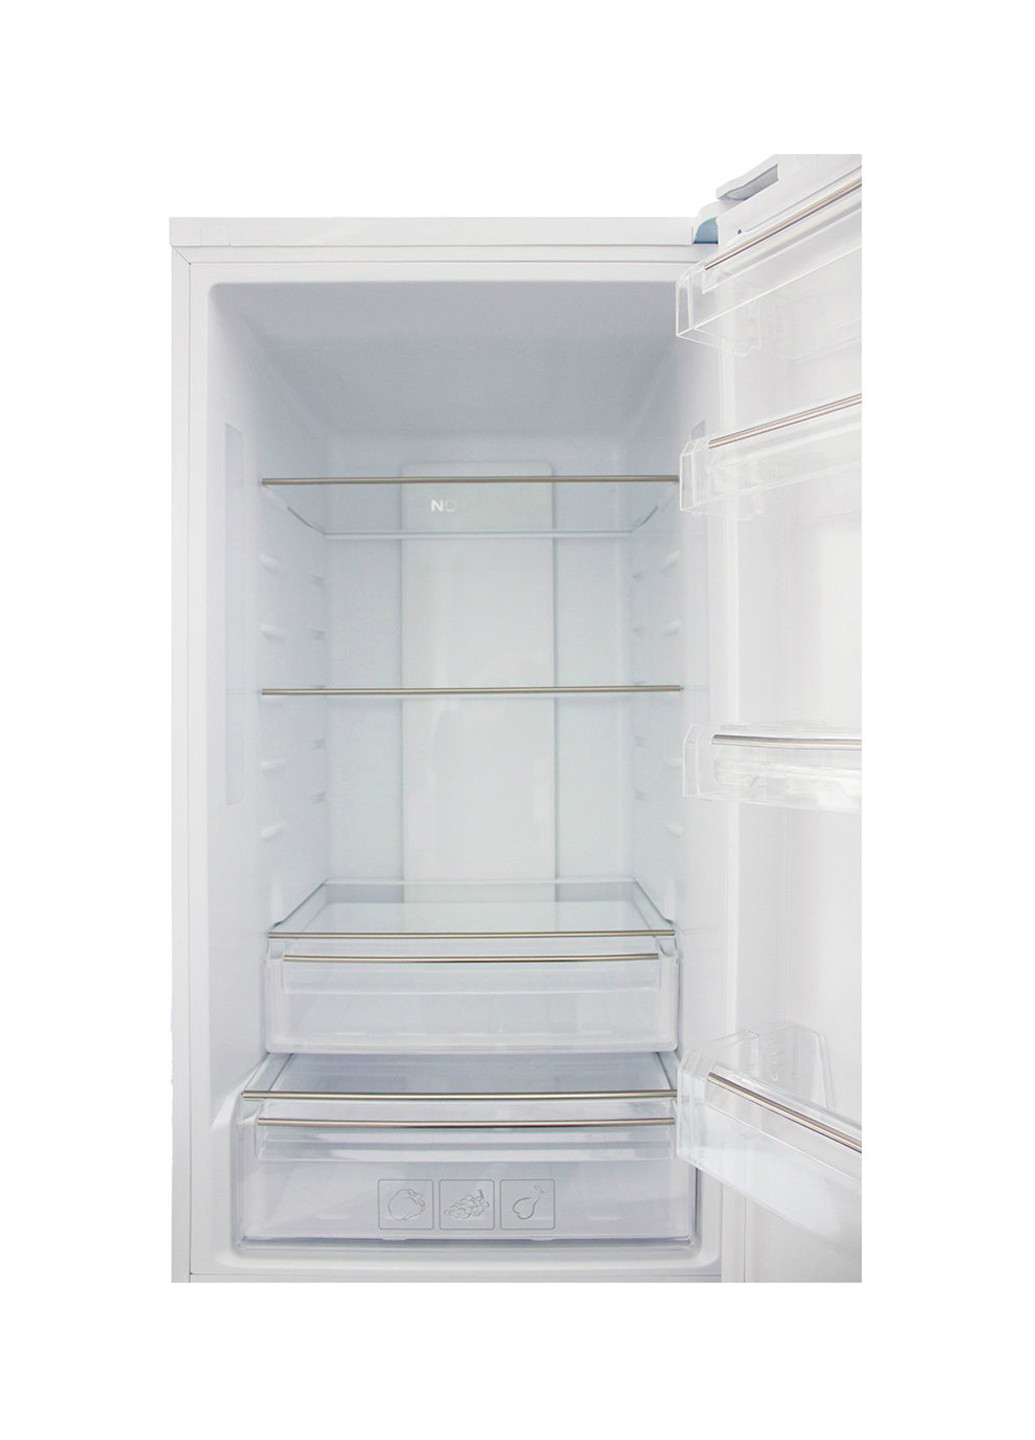 Холодильник комби PRIME TECHNICS RFN 1801 E D